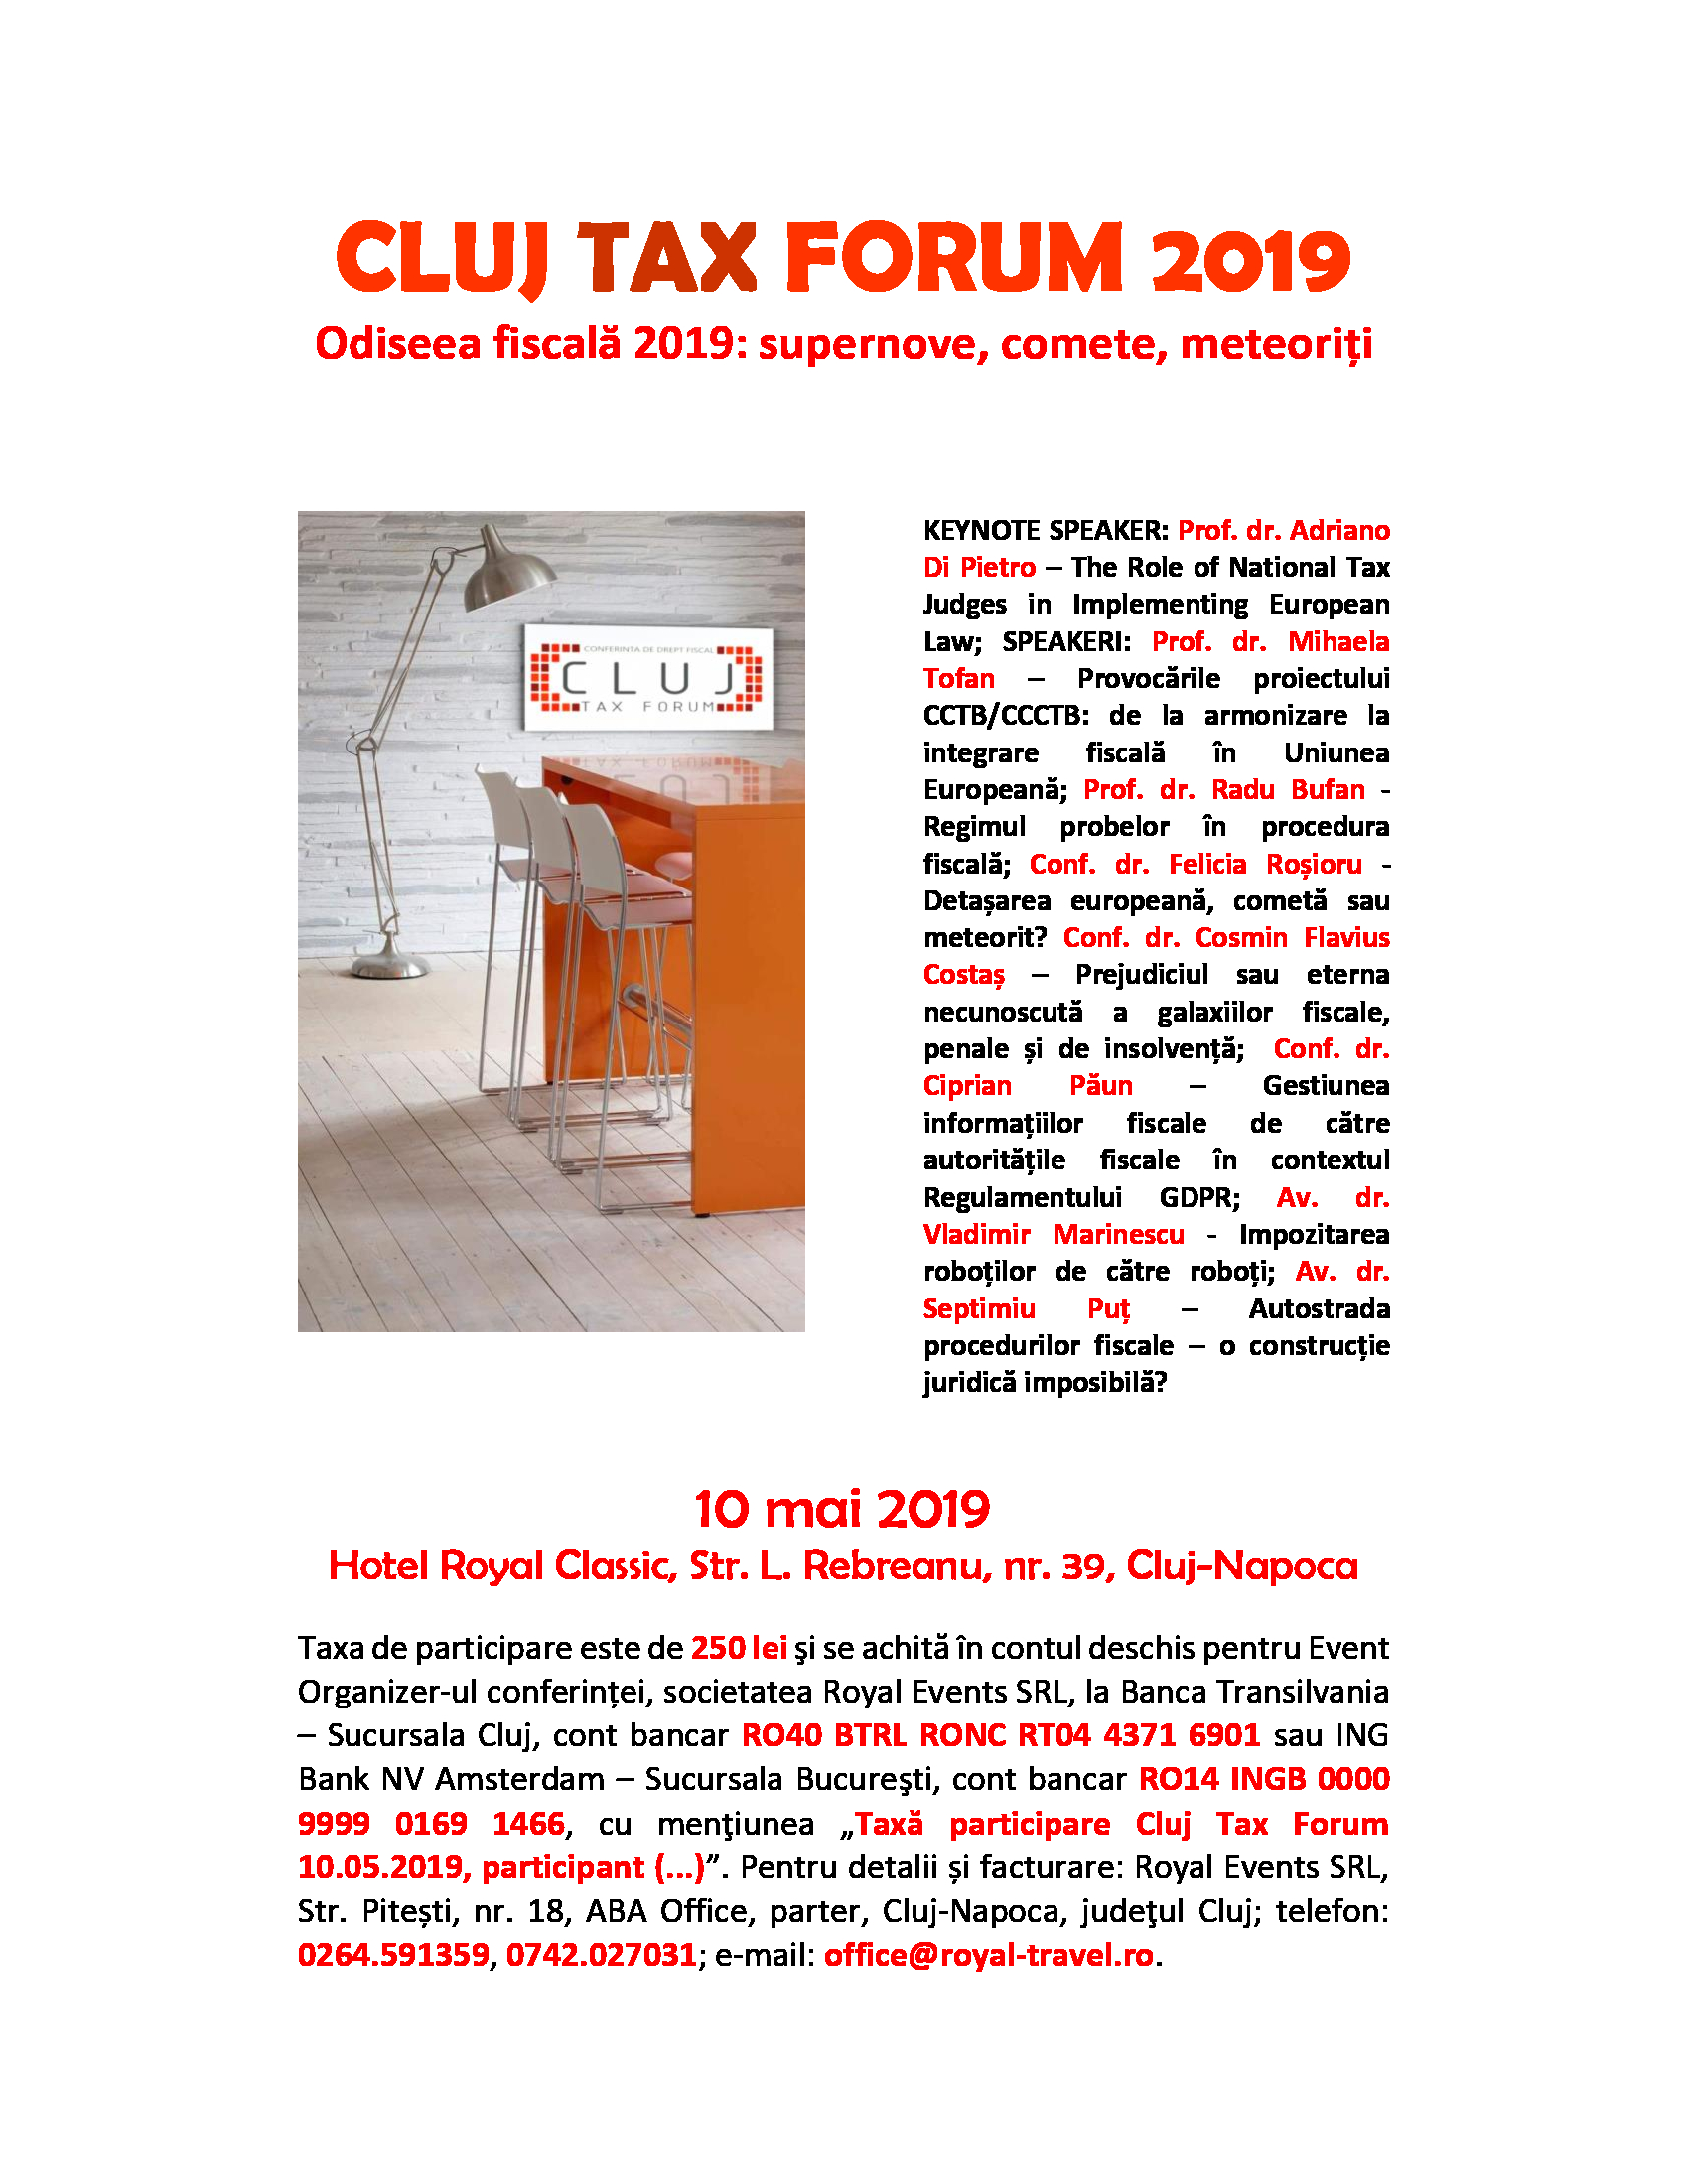 Cluj Tax Forum 2019: Odiseea fiscală 2019 - supernove, comete, meteoriți